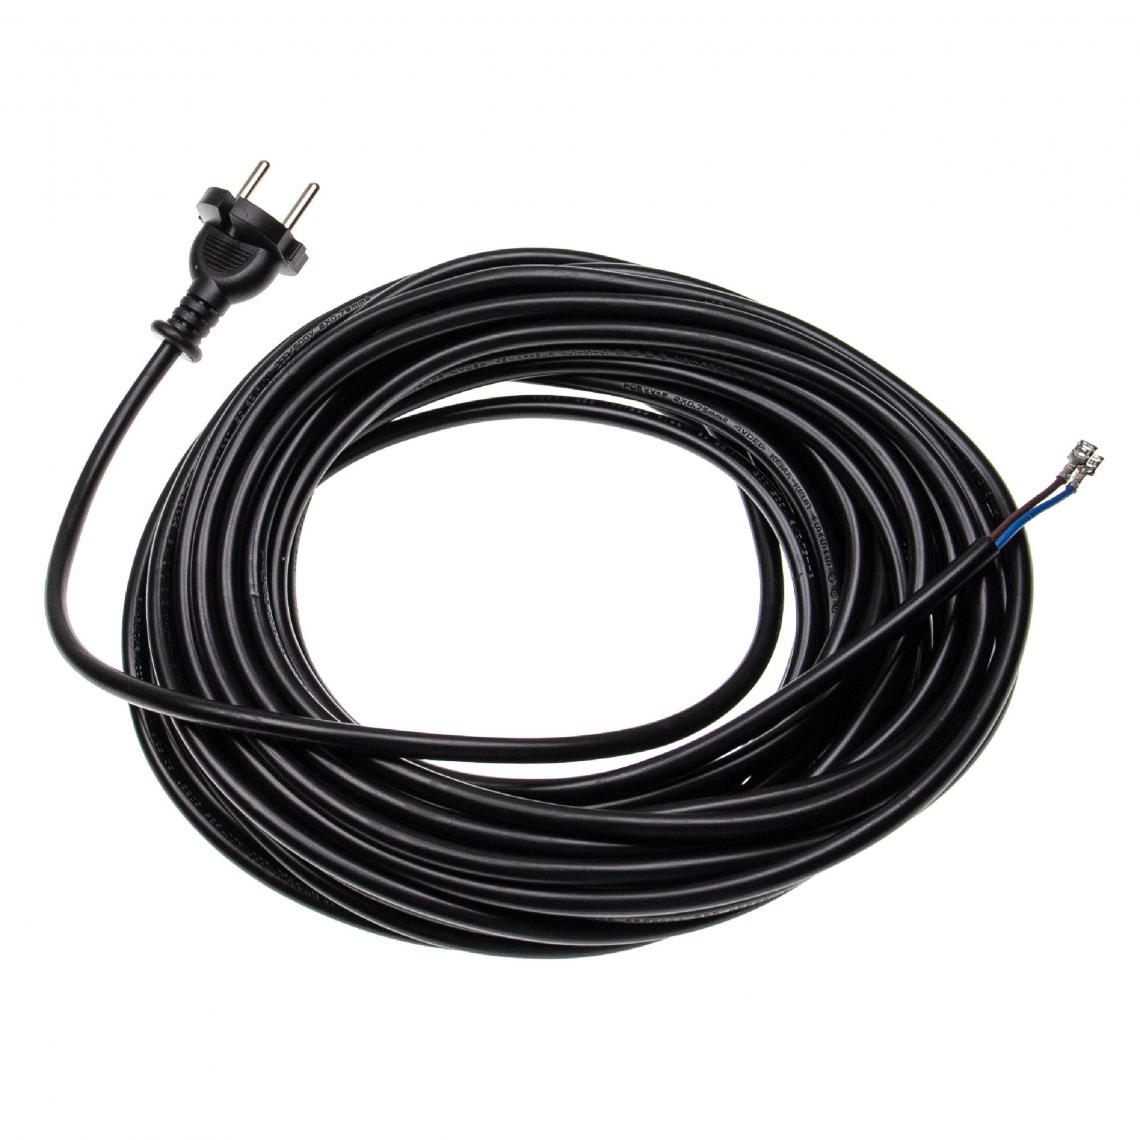 Vhbw - vhbw Câble électrique compatible avec Nilfisk AERO-Serie, ALTO-Serie, GD710, GD930 aspirateurs - 15 m, 4000 W - Accessoire entretien des sols